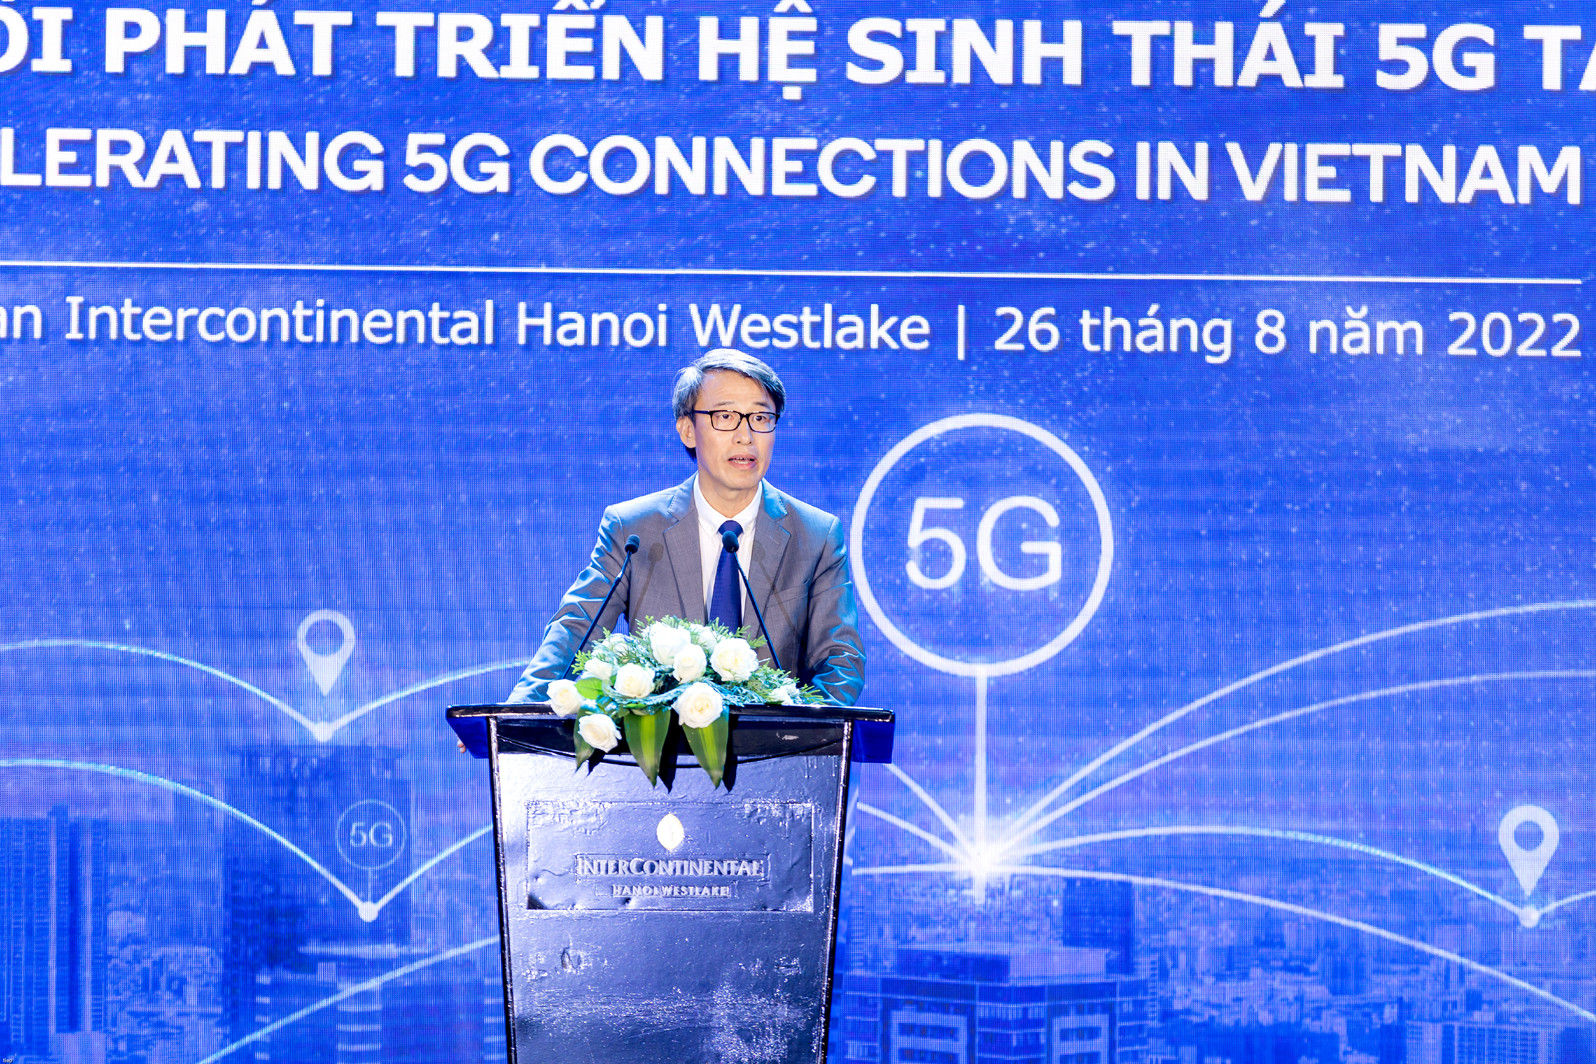 Các đại gia công nghệ bắt tay nhau thúc đẩy 5G tại Việt Nam - Ảnh 5.